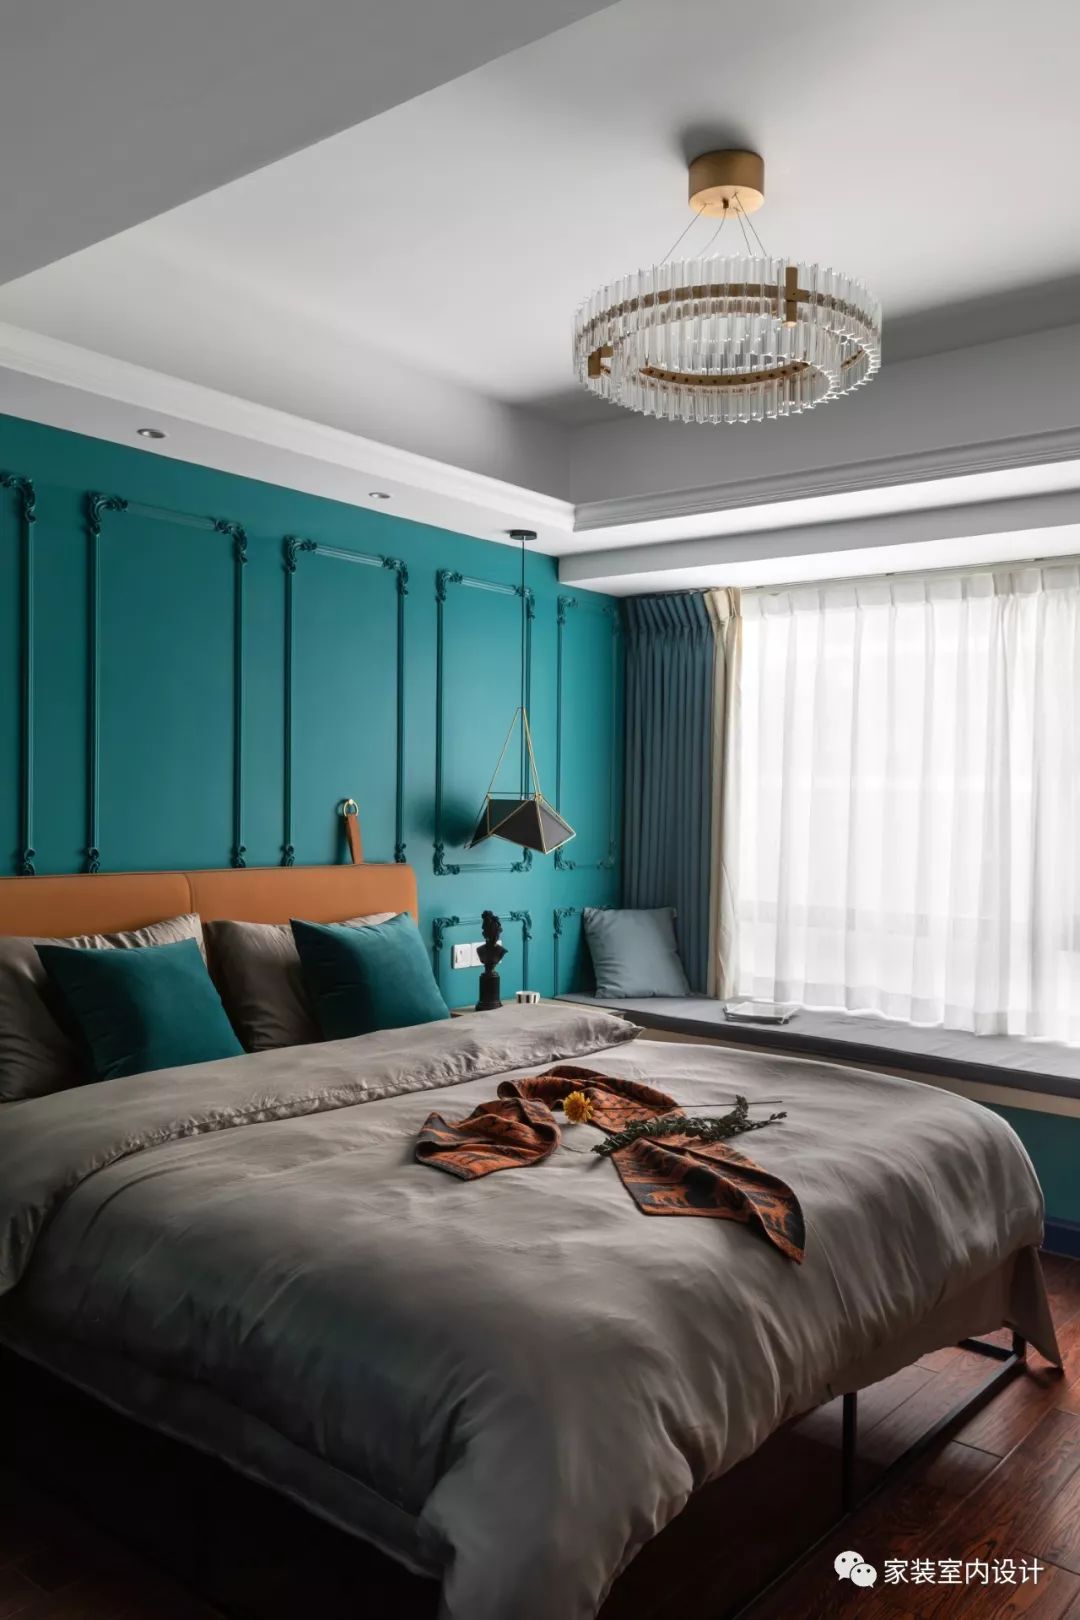 卧室的色调与整体一致,以孔雀蓝为背景,背景墙还增加了优美的法式石膏